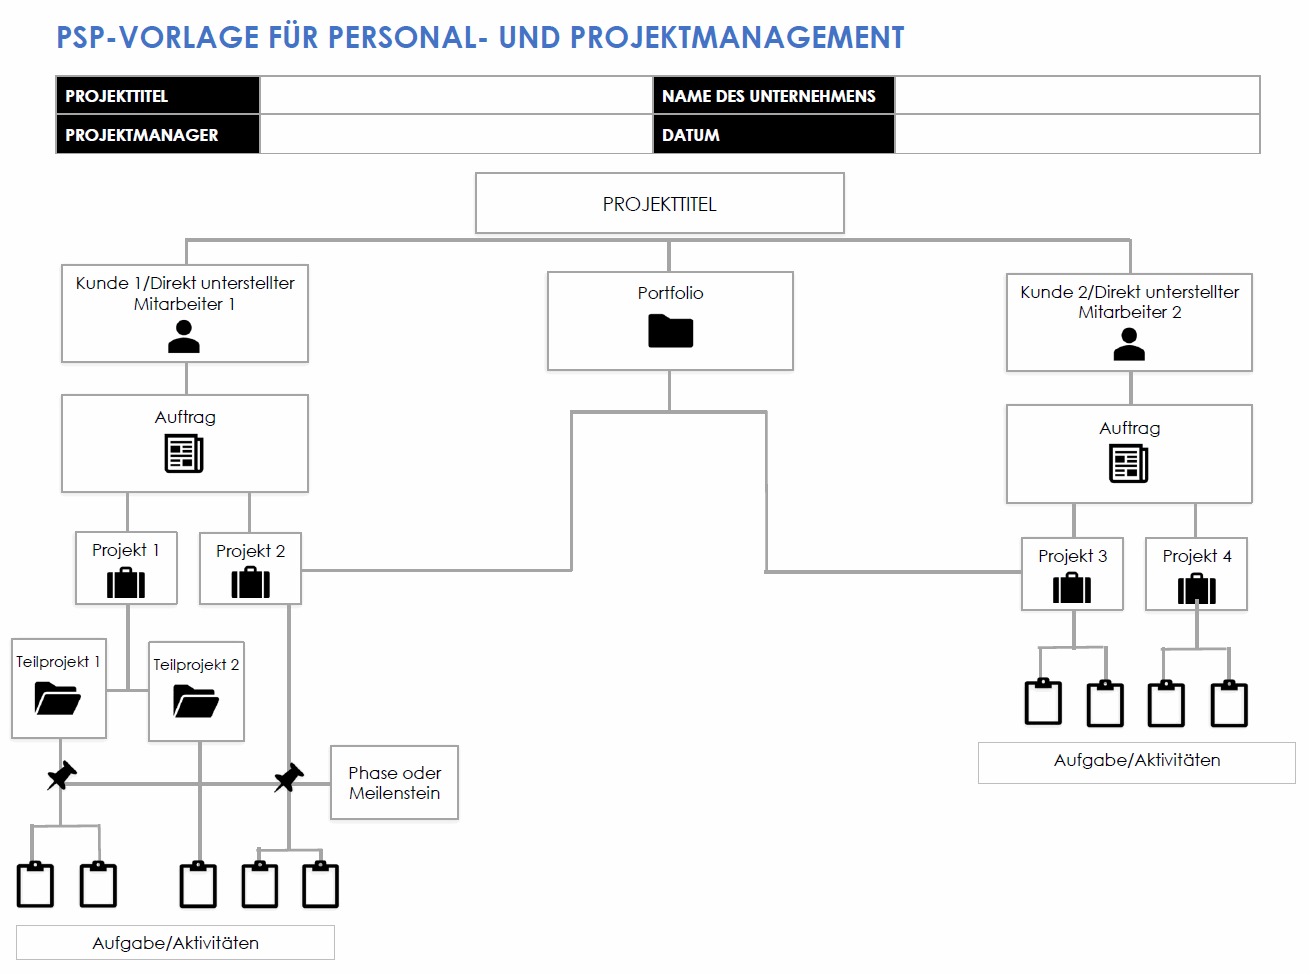  PSP-Vorlage für Personal- und Projektmanagement